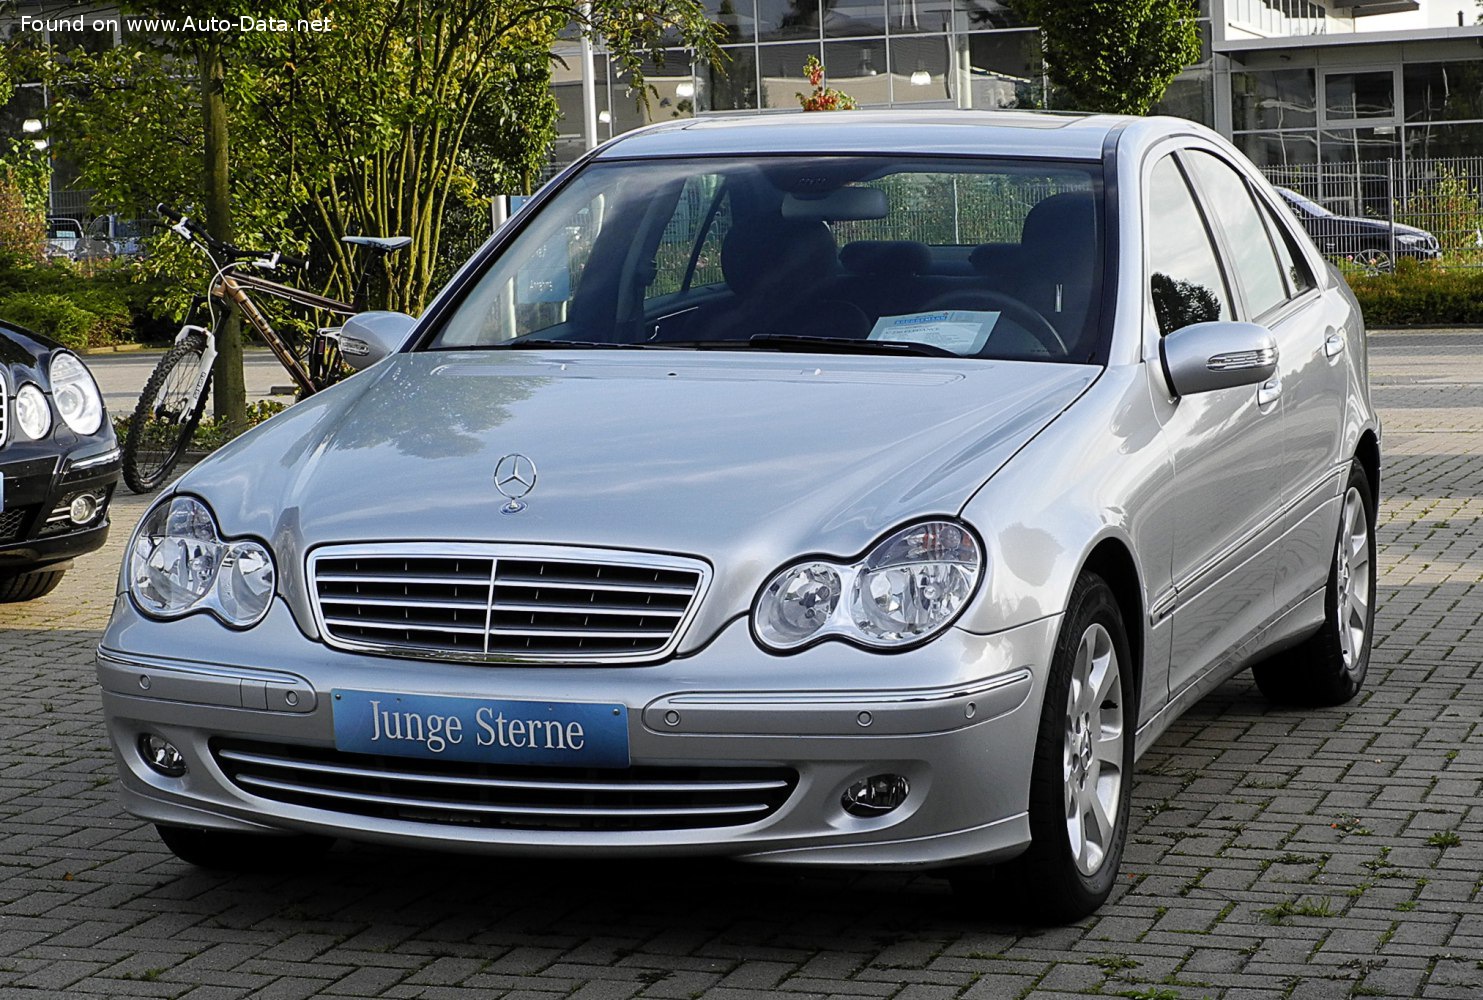 https://www.auto-data.net/images/f68/Mercedes-Benz-C-class-W203-facelift-2004.jpg